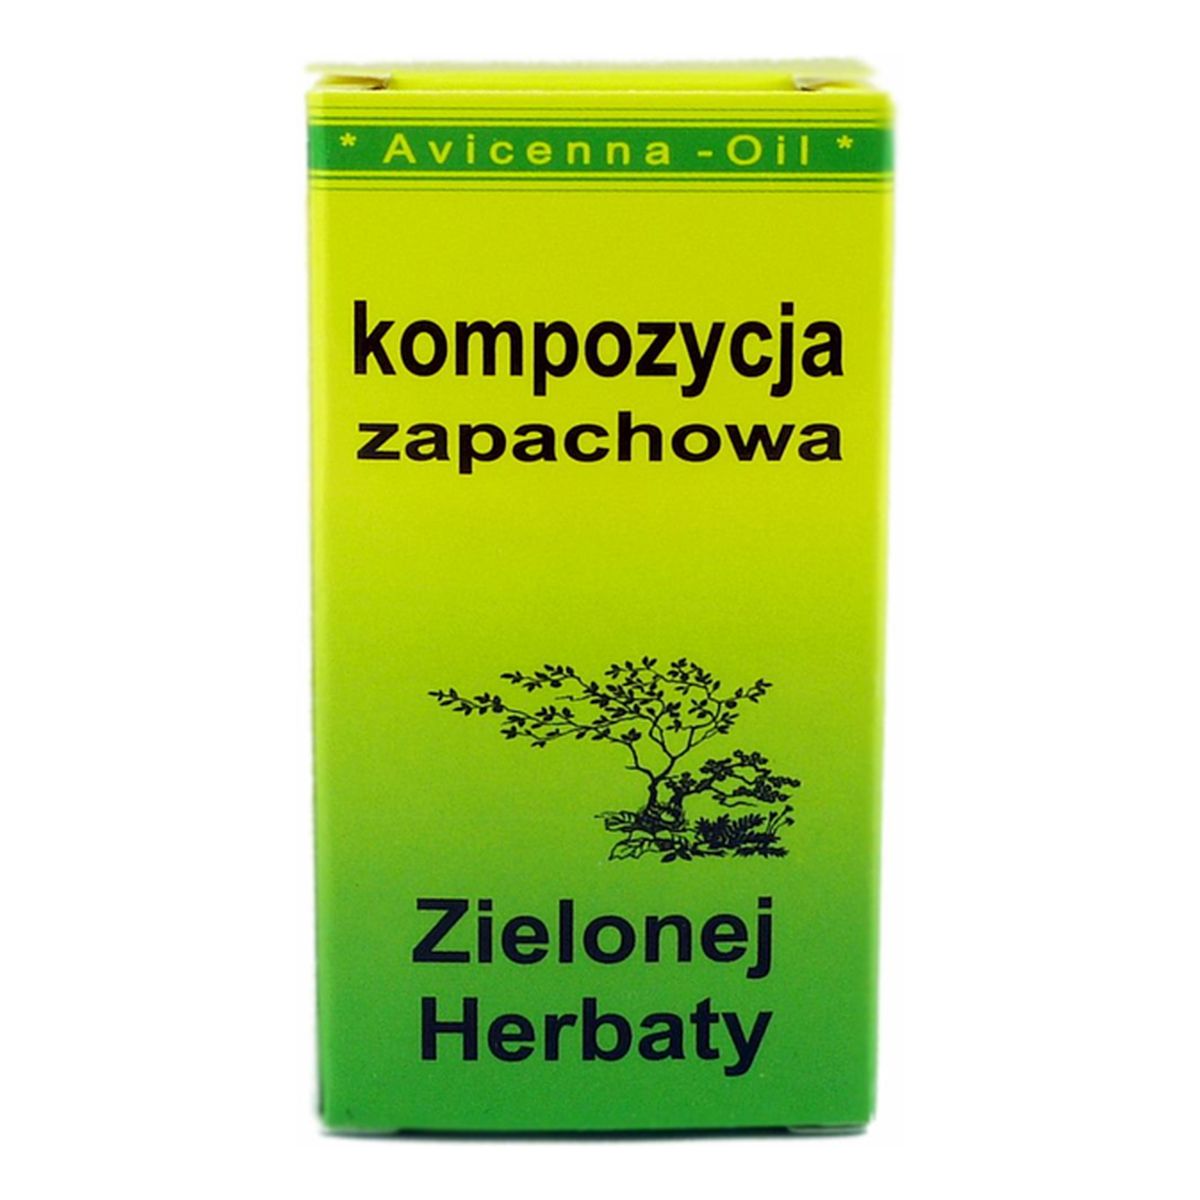 Avicenna-Oil Kompozycja Zapachowa Zielonej Herbaty 7ml